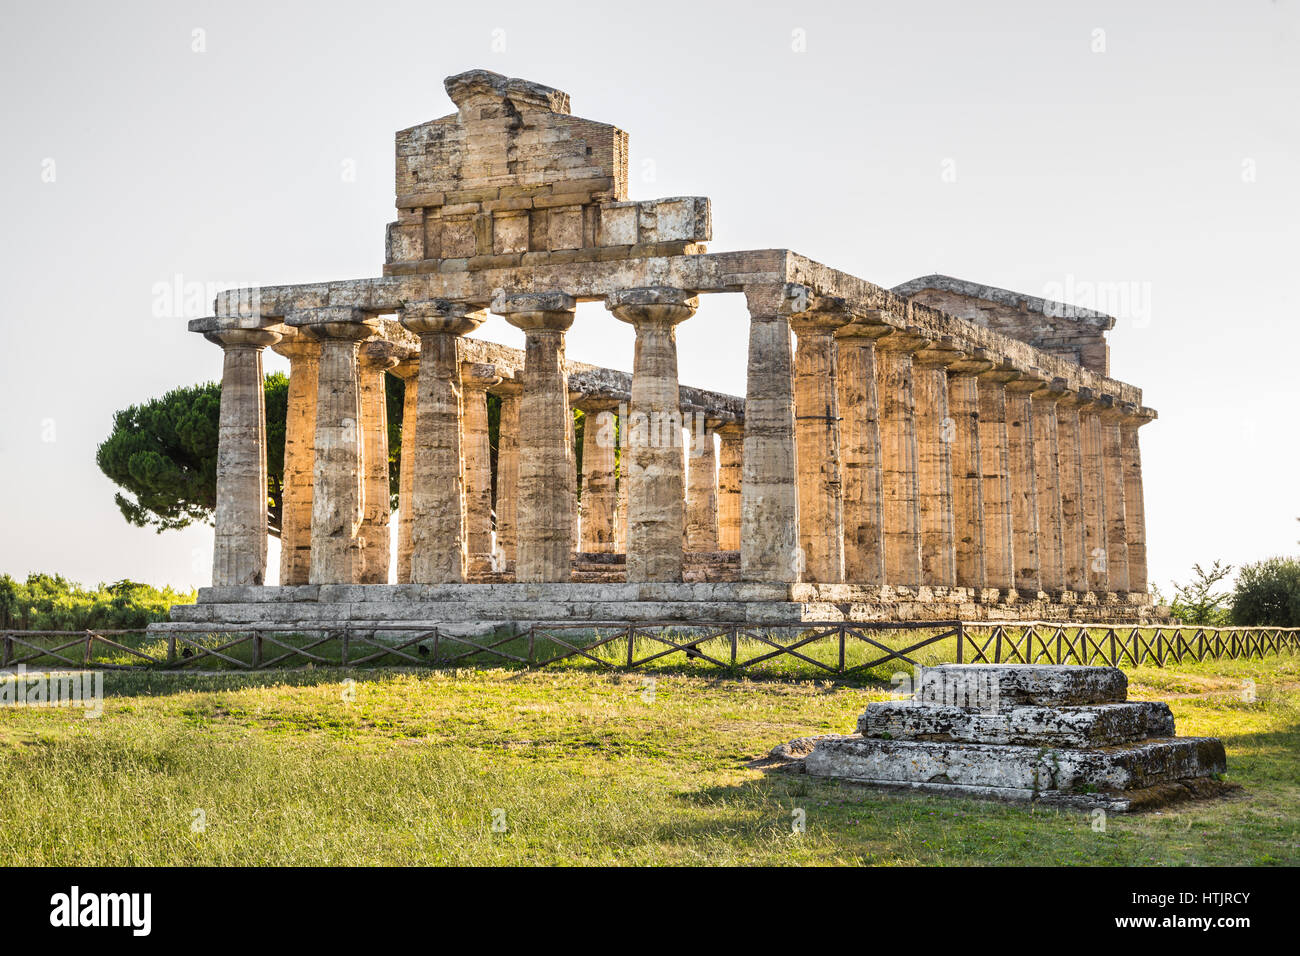 À l'ancien temple archéologique de Paestum célèbre site du patrimoine mondial de l'UNESCO qui contient certaines des plus anciennes bien préservées, temples grecs, Italie Banque D'Images